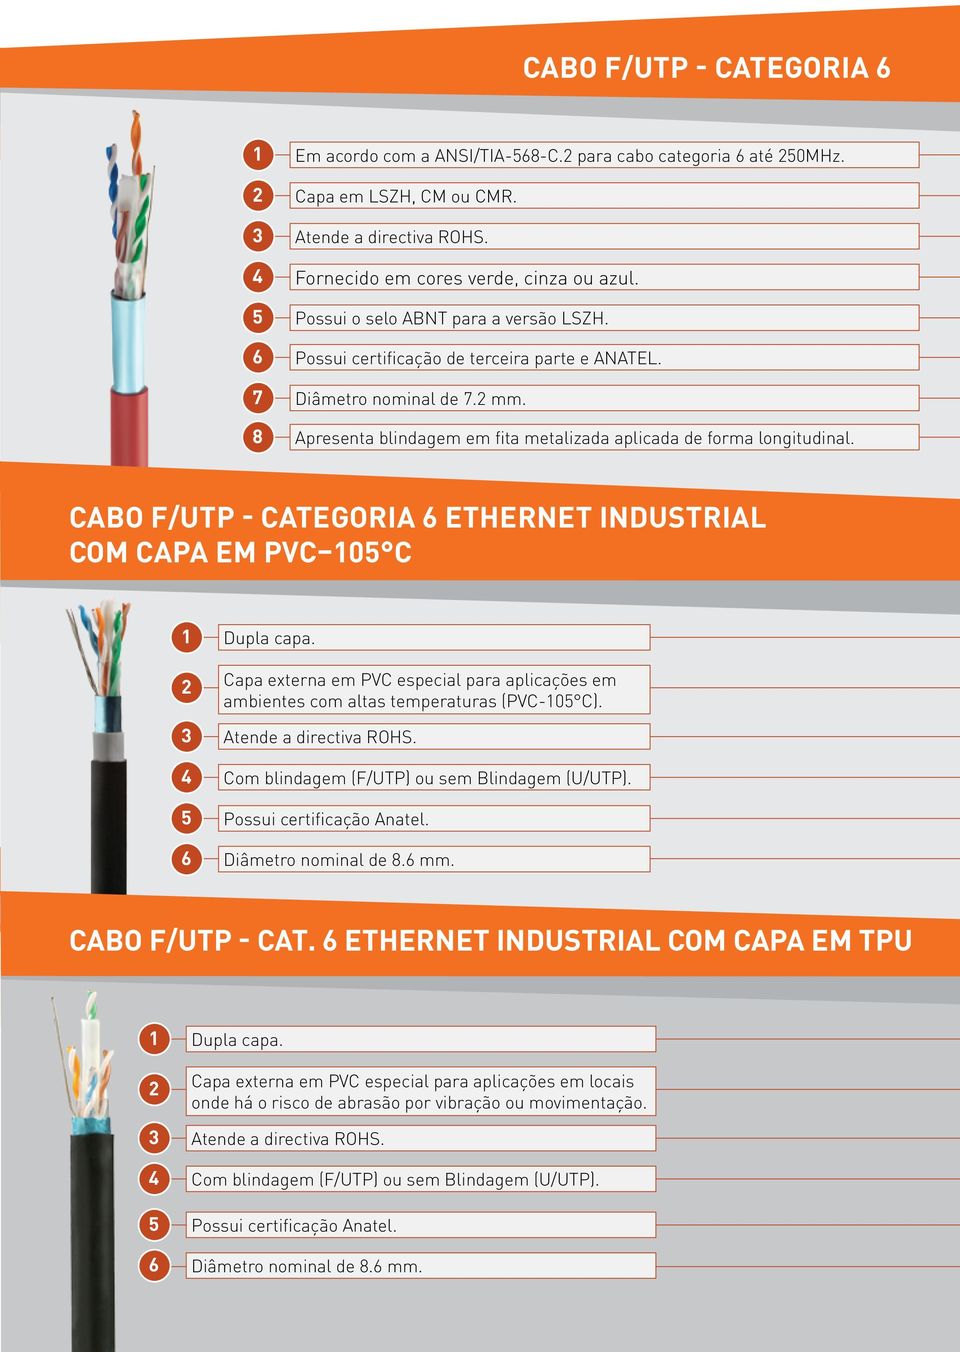 Cabo F/UTP - Categoria 6 Ethernet industrial com capa em PVC 05 C 2 Dupla capa. Capa externa em PVC especial para aplicações em ambientes com altas temperaturas (PVC-05 C). 3 Atende a directiva ROHS.